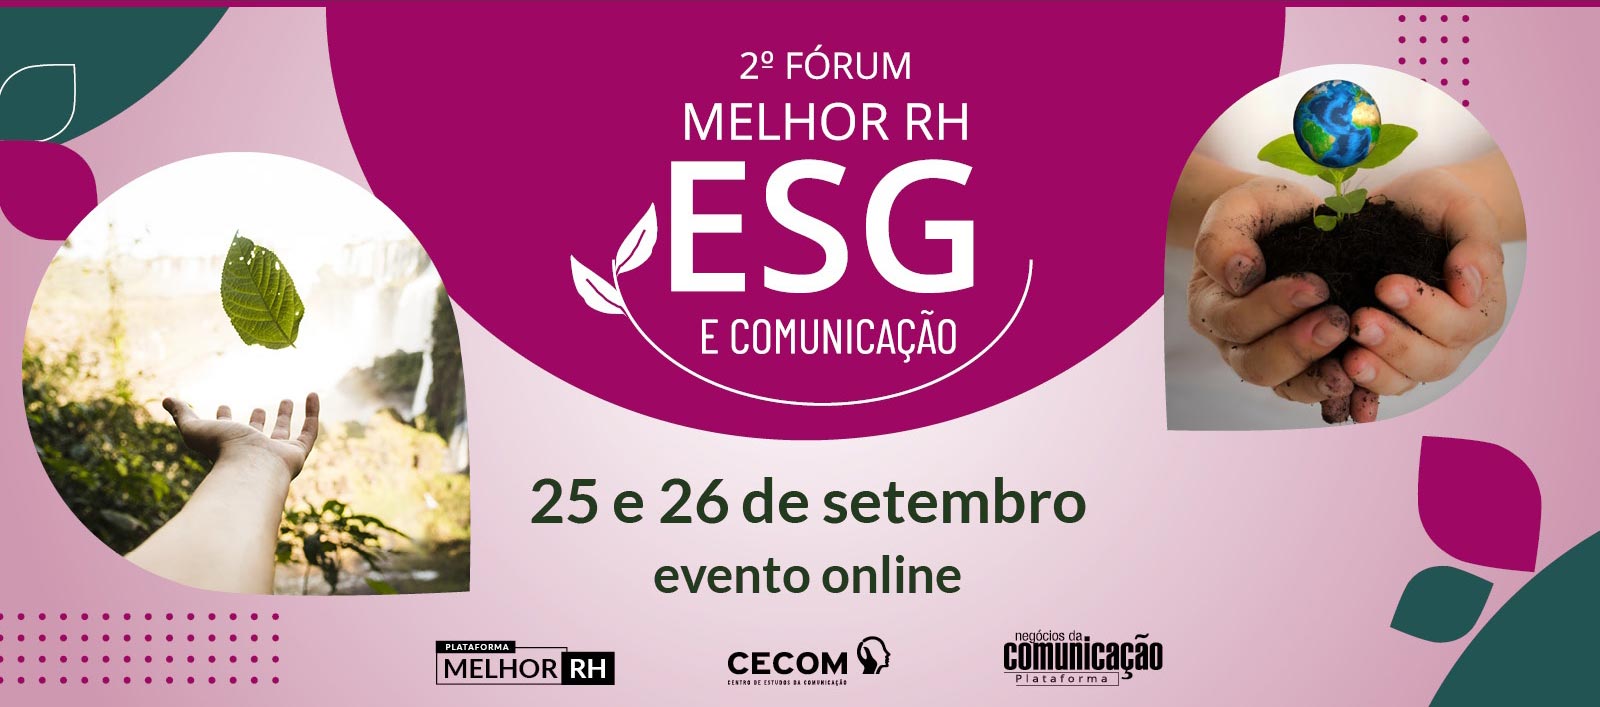 2º Fórum Melhor RH ESG e Comunicação - Consciência para direcionar